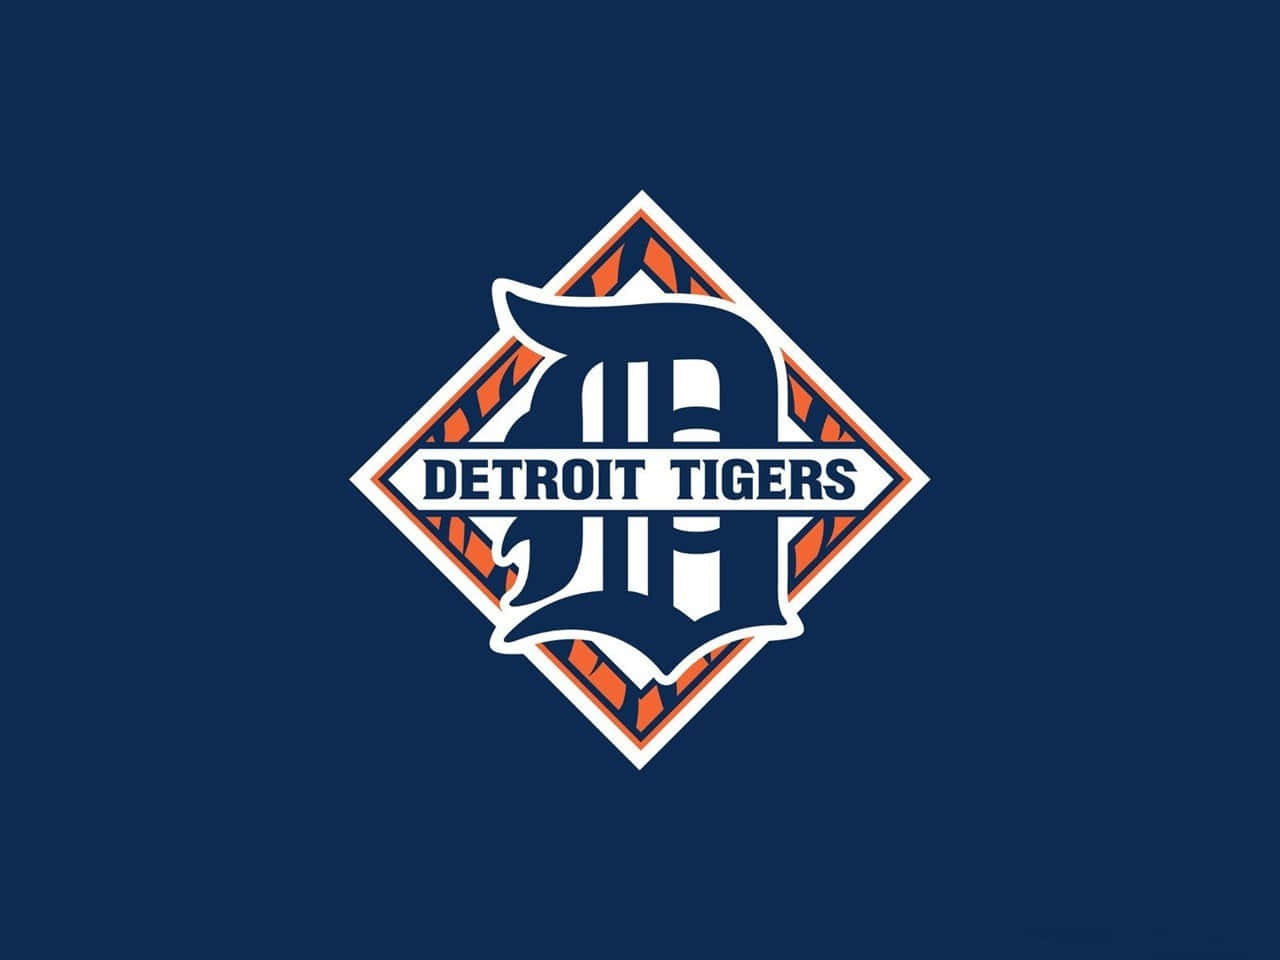 Download Detroit Tigers Logo Wallpaper | Wallpapers.com